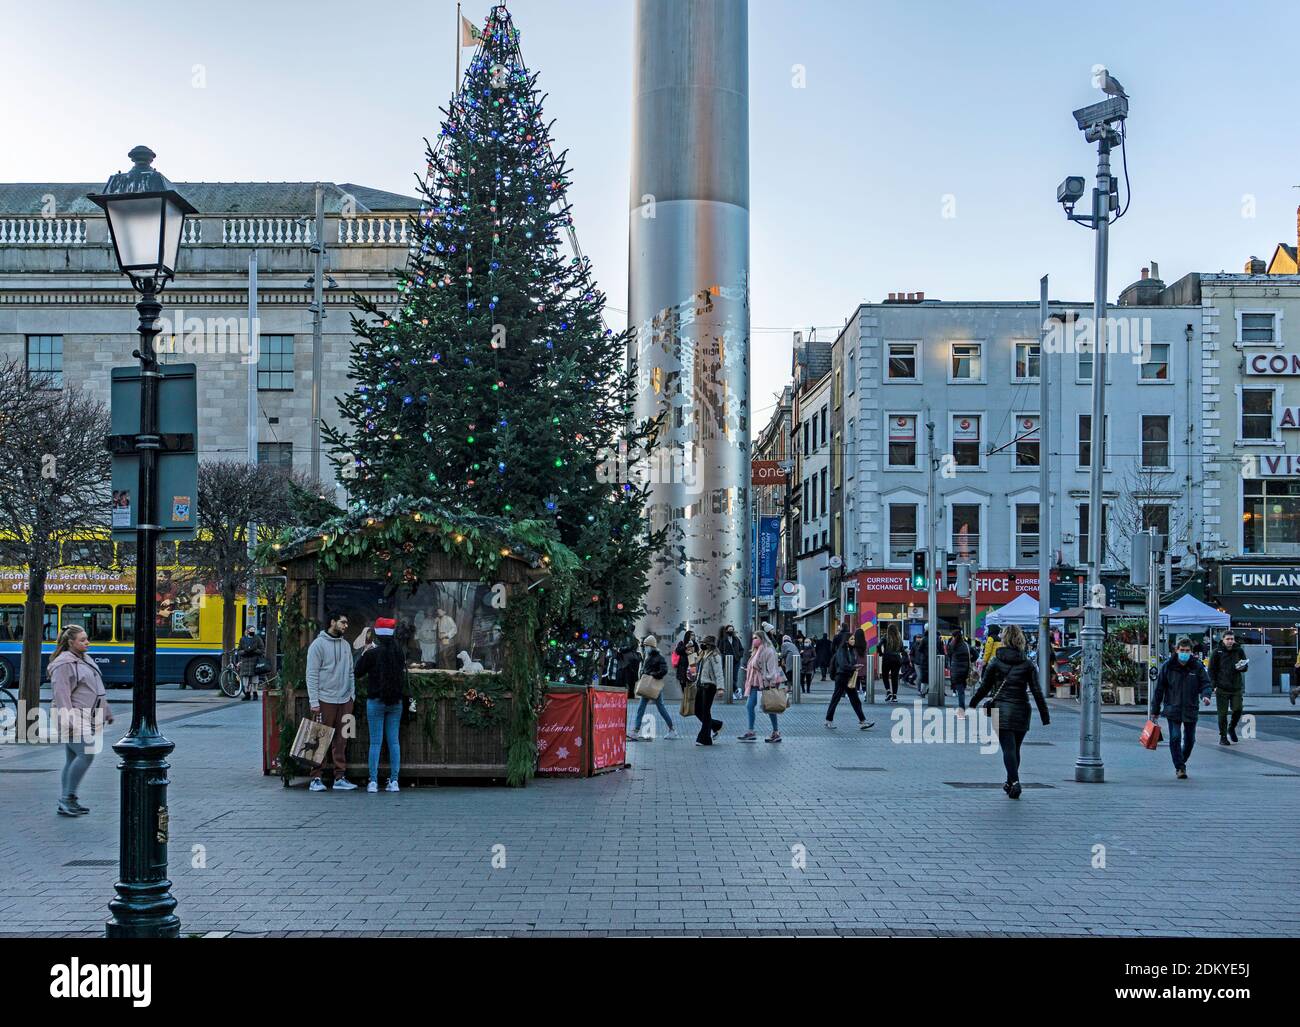 Natale a o’Connell Street, Dublino, Irlanda con un albero di Natale e la struttura in acciaio inossidabile della spire che domina la strada. Foto Stock